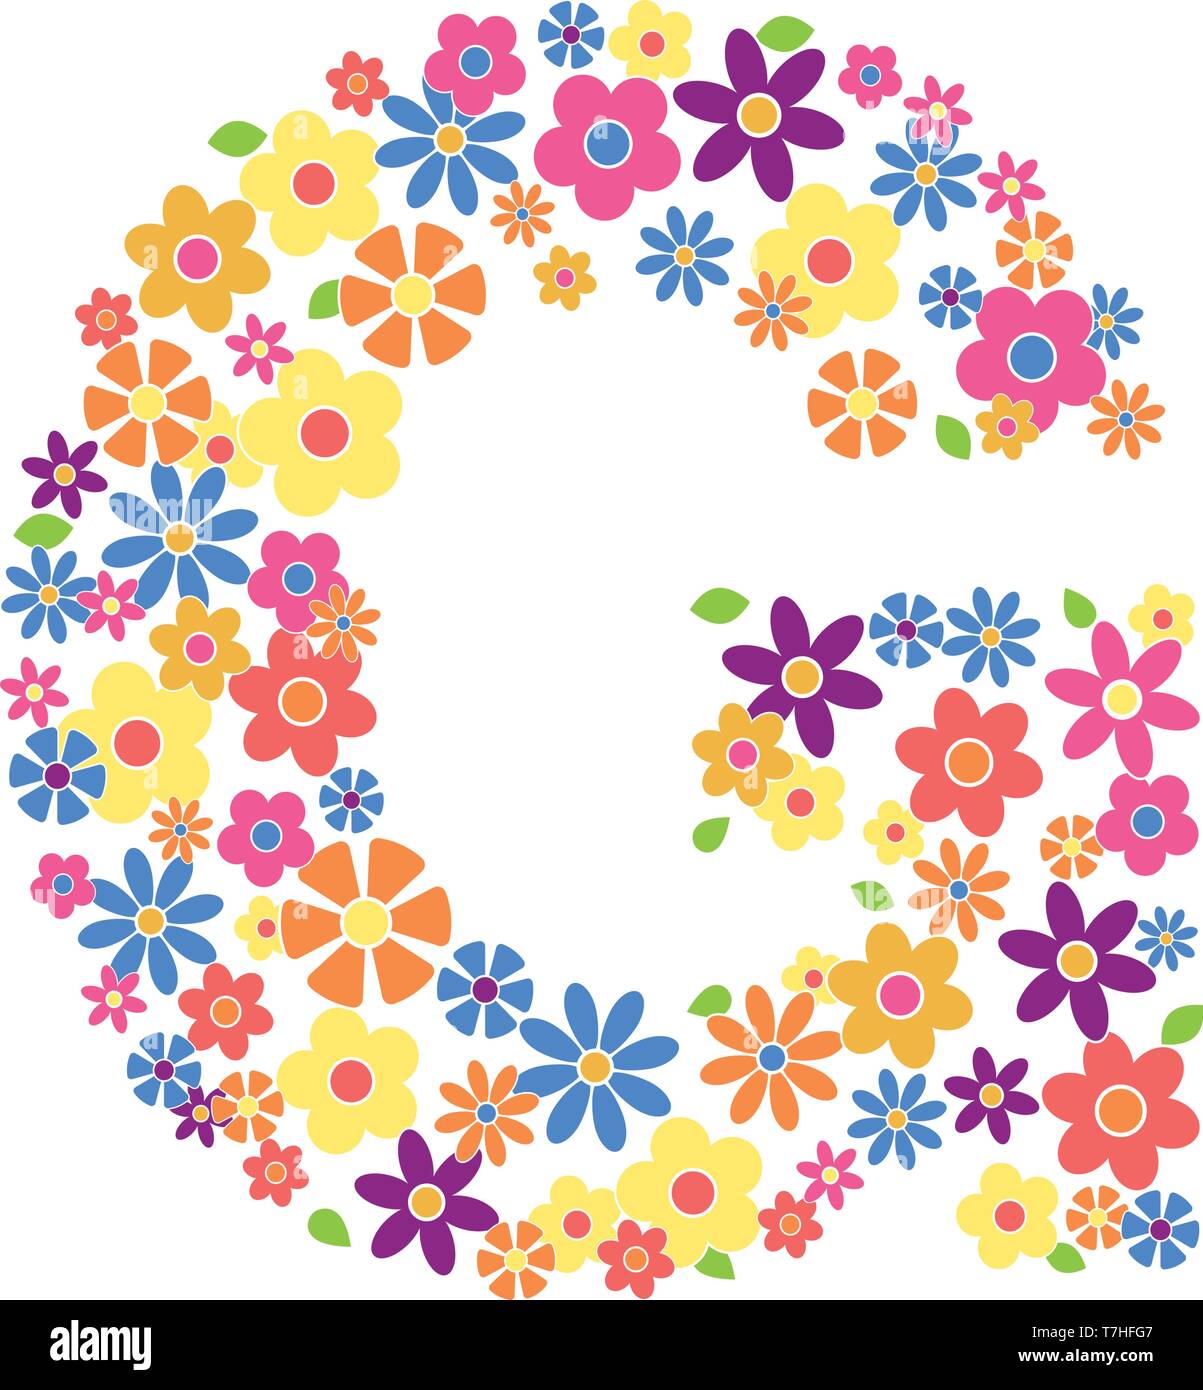 Buchstabe G gefüllt mit einer Vielzahl von bunten Blumen auf weißem Hintergrund Vektor-illustration isoliert Stock Vektor